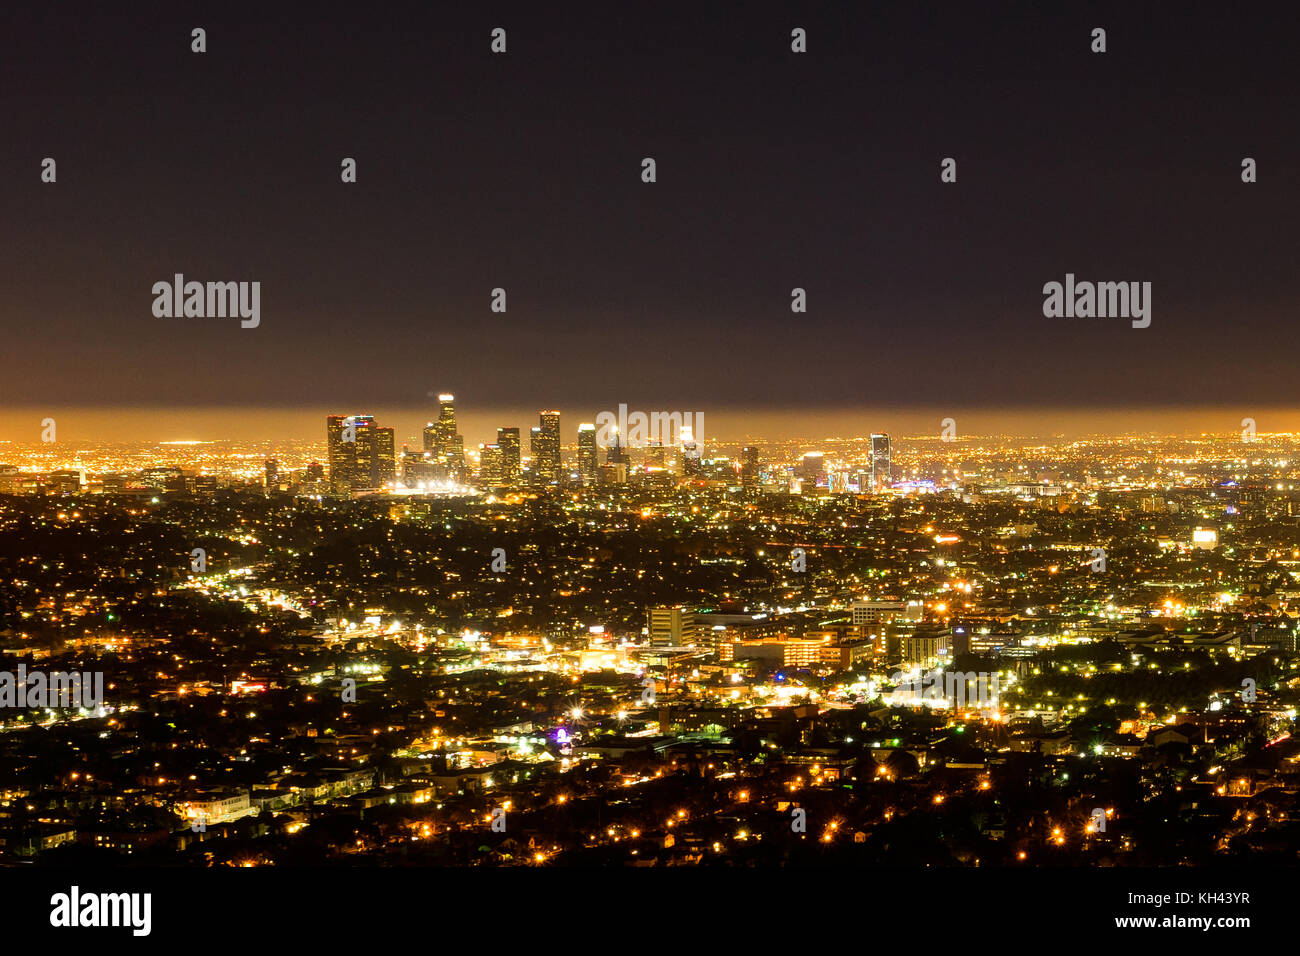 LA Ciudad de Los Ángeles vista nocturna desde el Observatorio Griffith Foto de stock